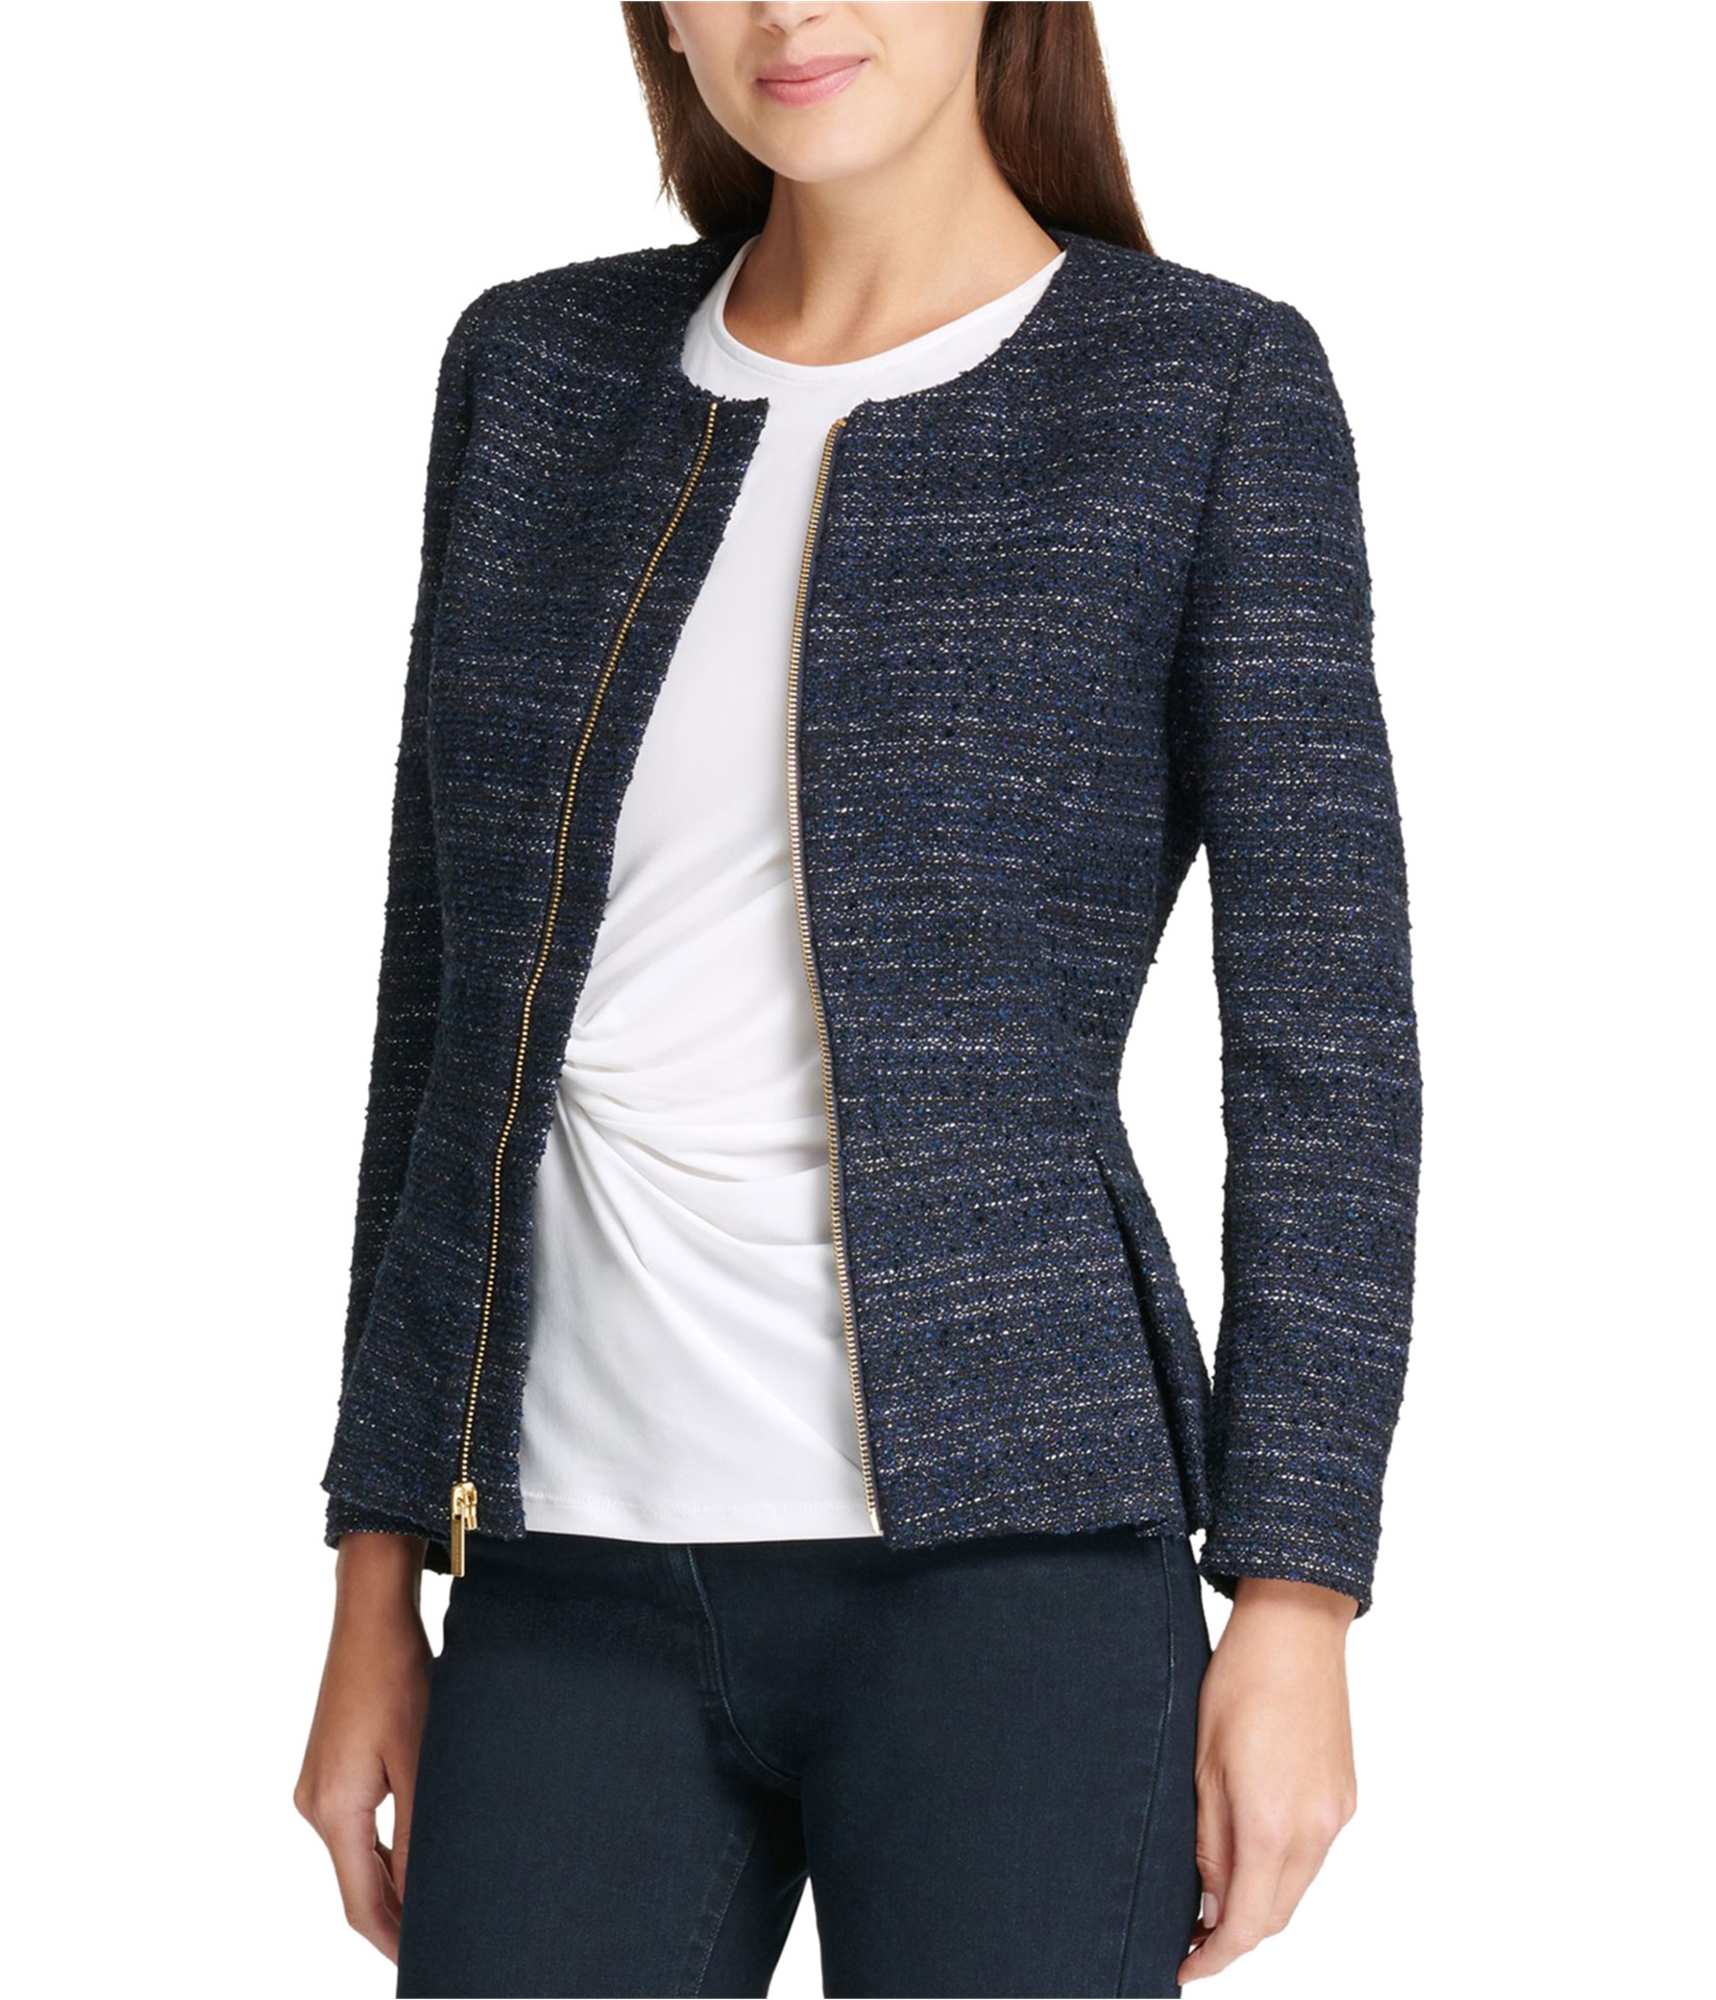 DKNY Womens Zip Up Peplum Blazer Jacket, Blue, 16 802892195945 | eBay